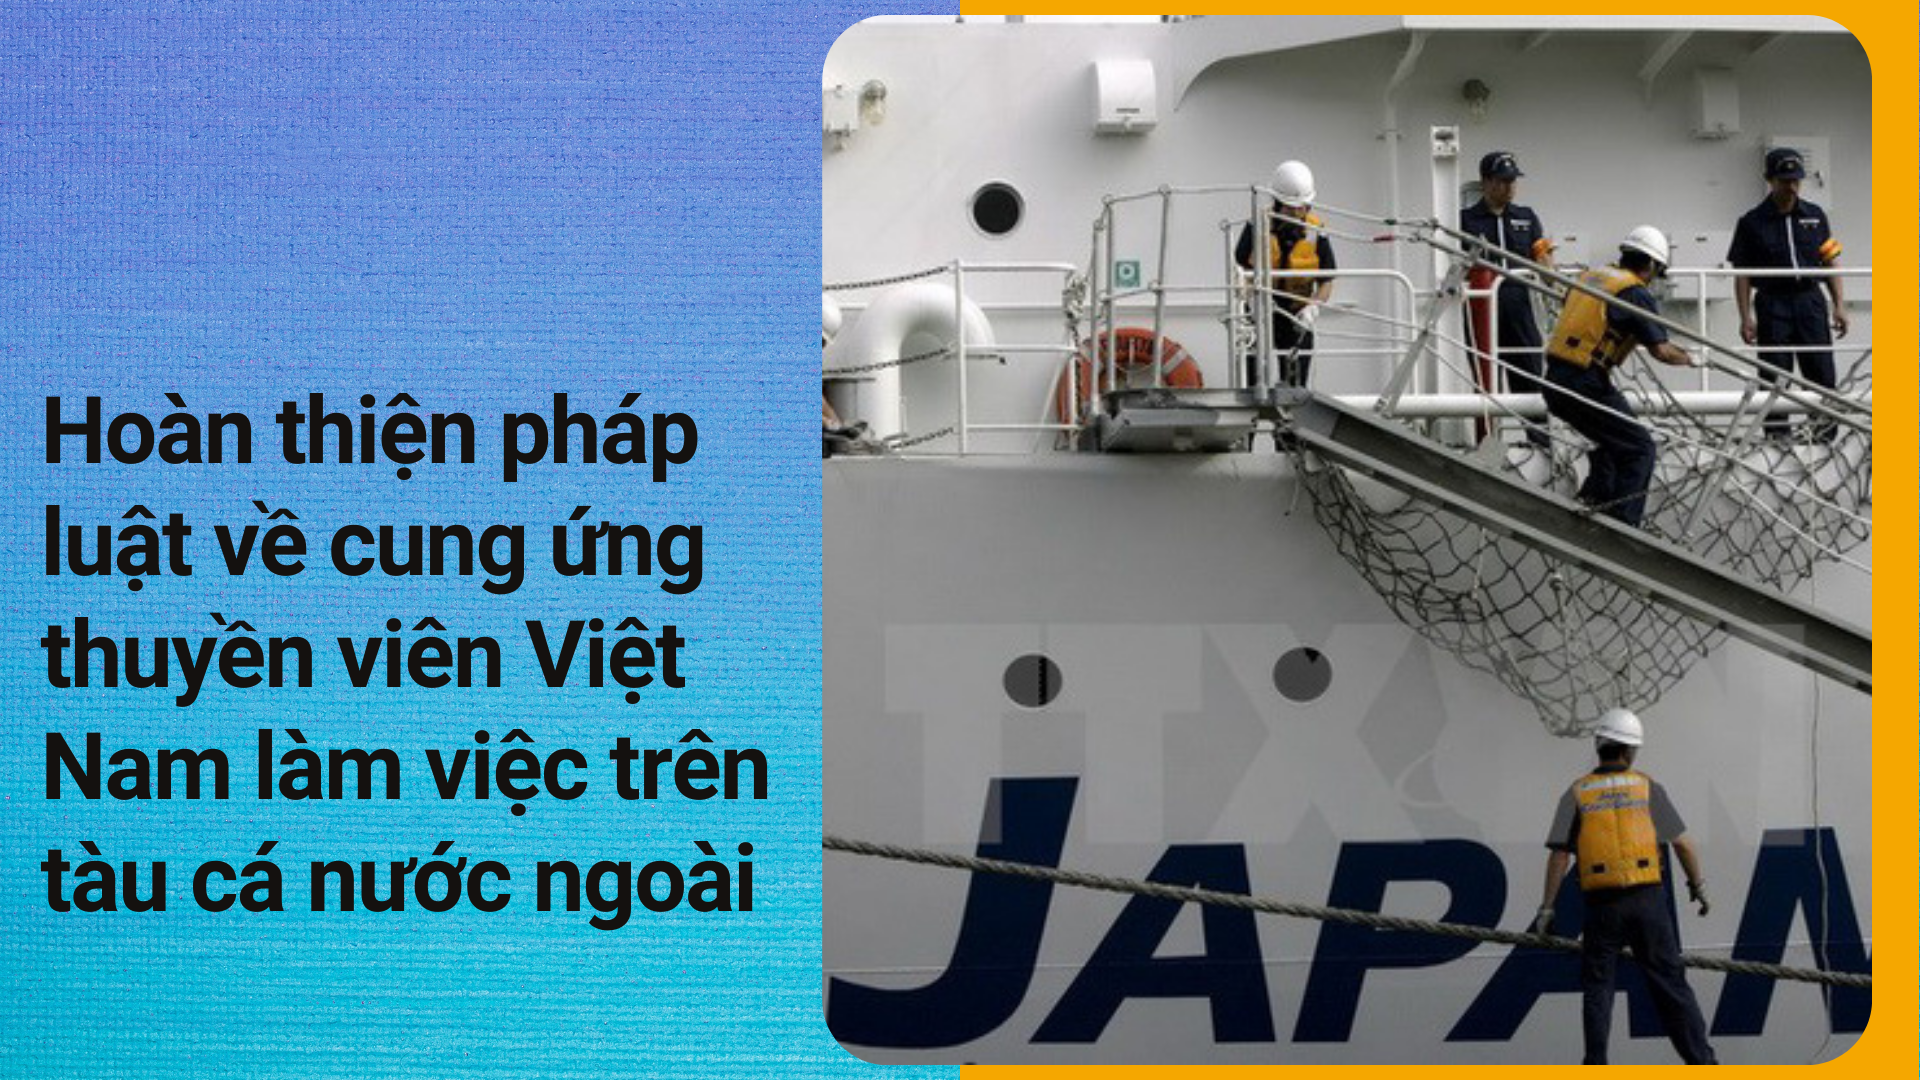 Hoàn thiện pháp luật về cung ứng thuyền viên Việt Nam làm việc trên tàu cá nước ngoài